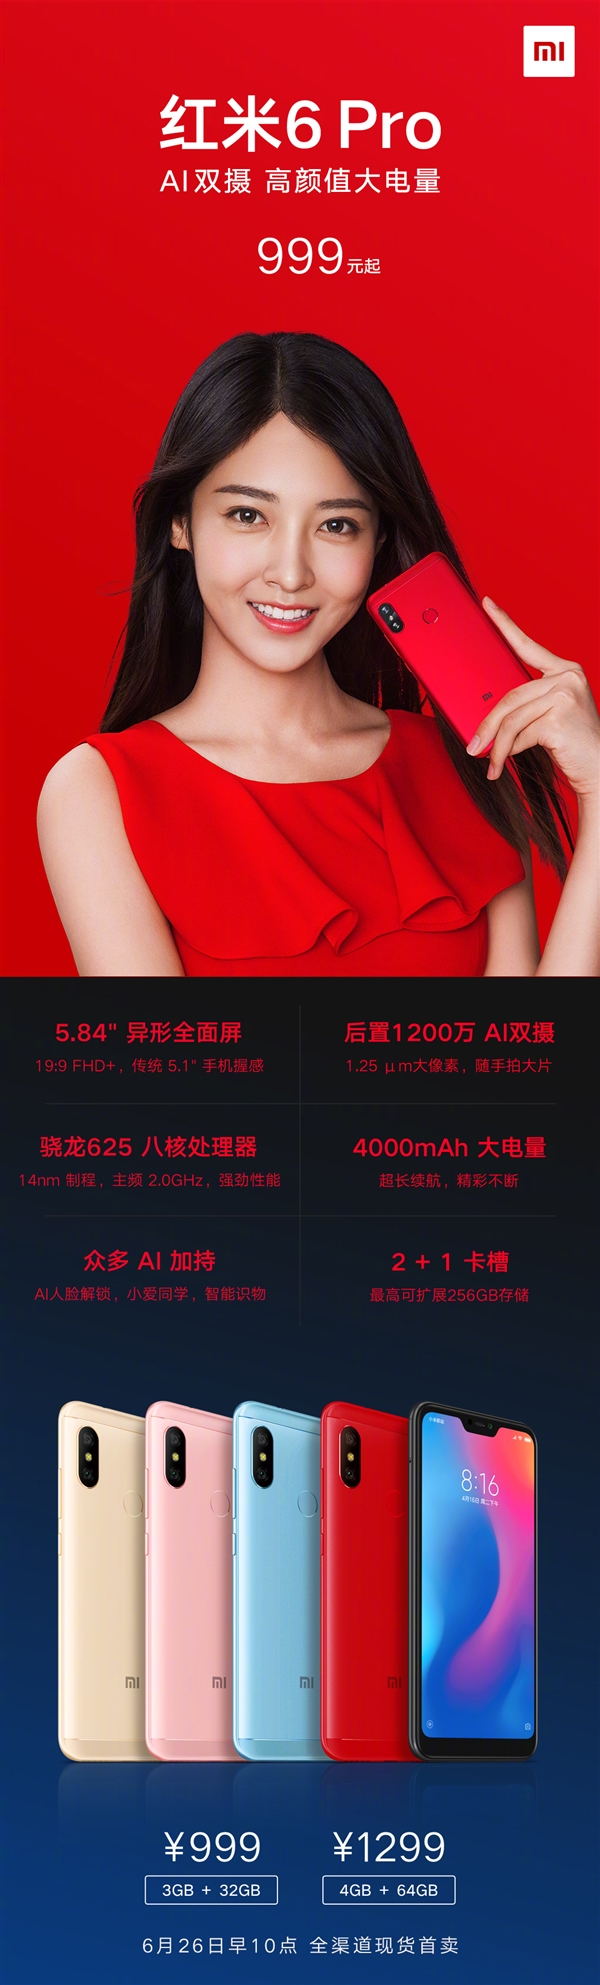 Вышел Xiaomi Redmi 6 Pro. Что может смартфон за 3?